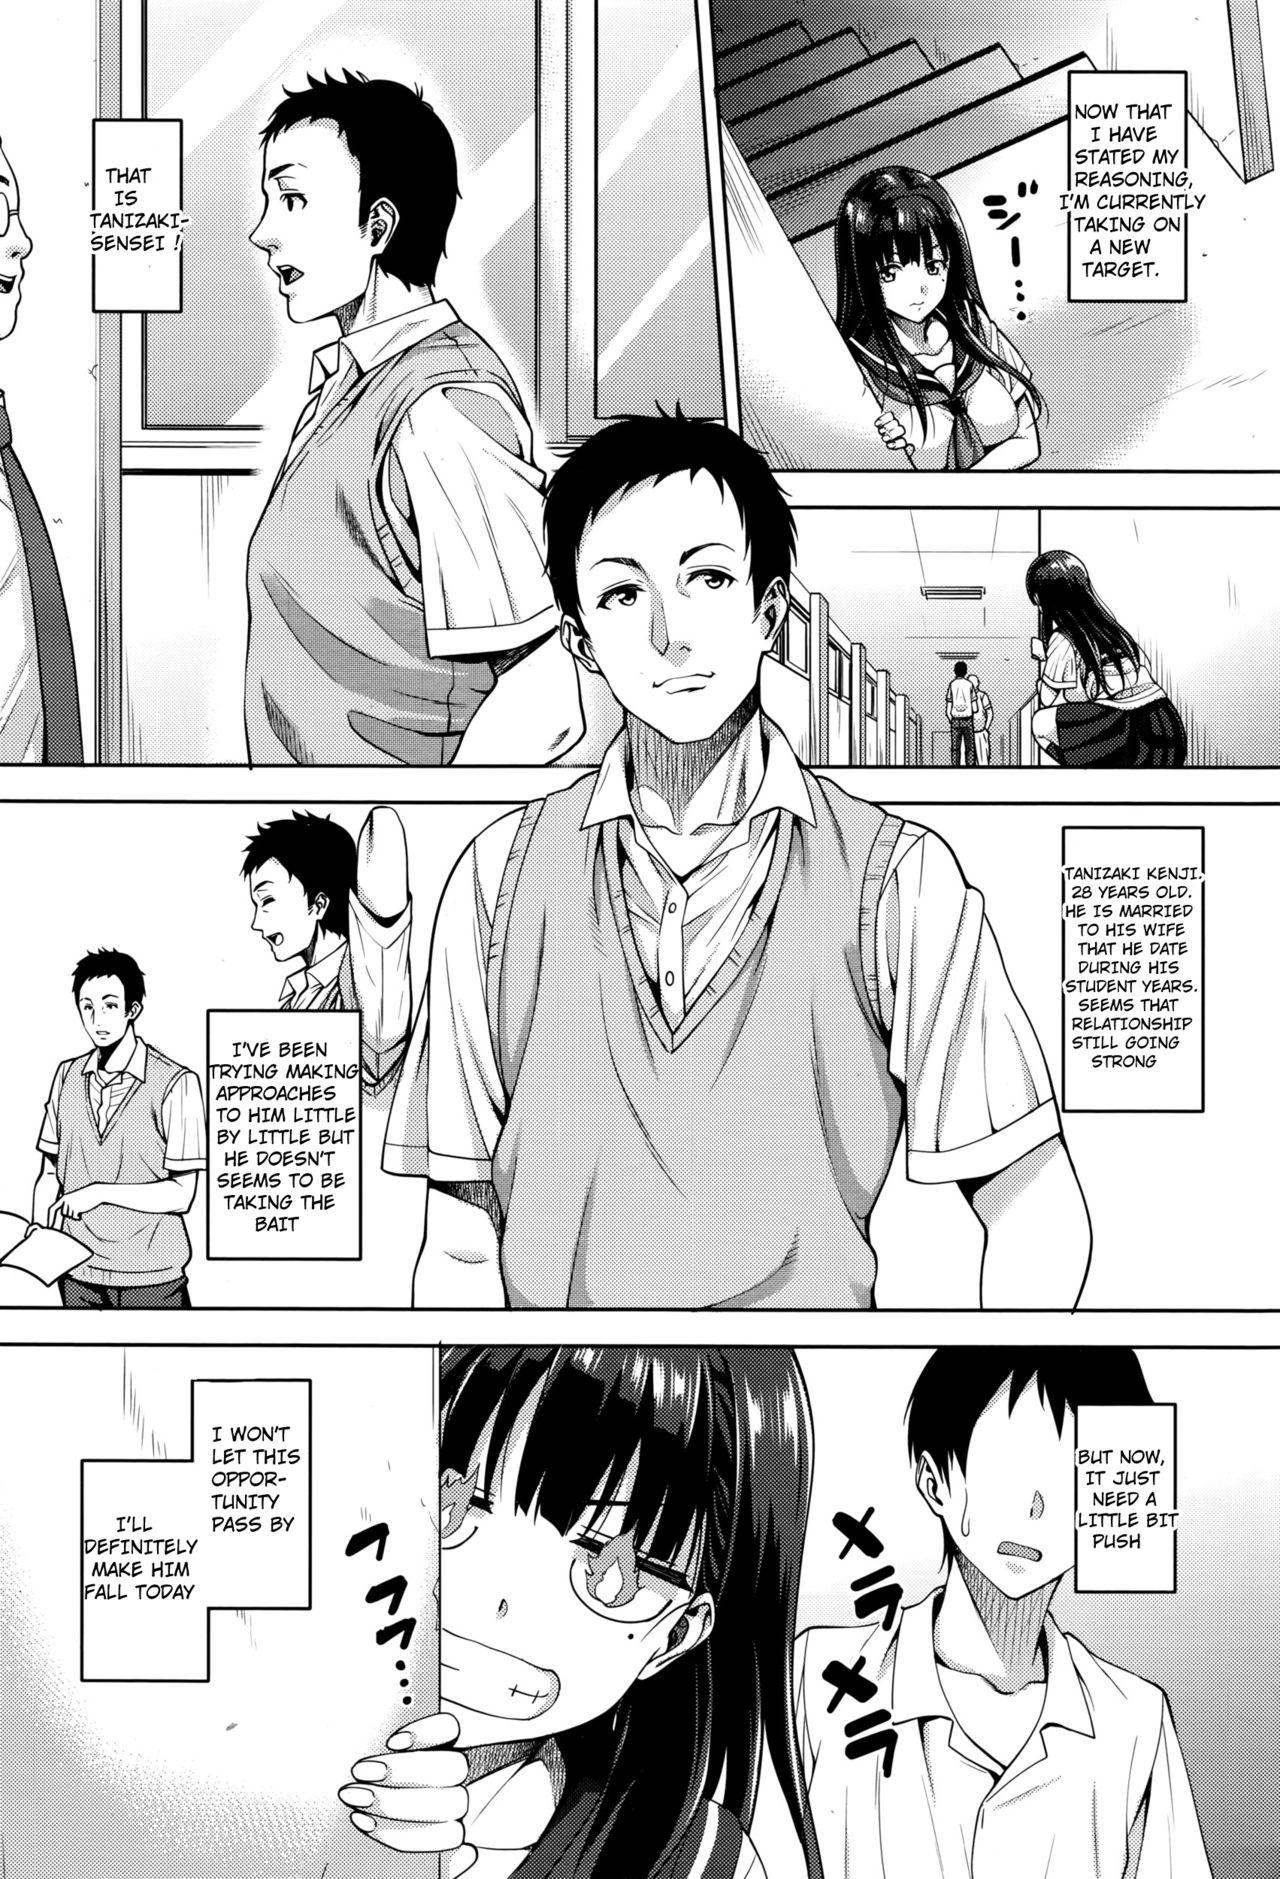 Bisexual Watashi no Saetayarikata Yanks Featured - Page 8